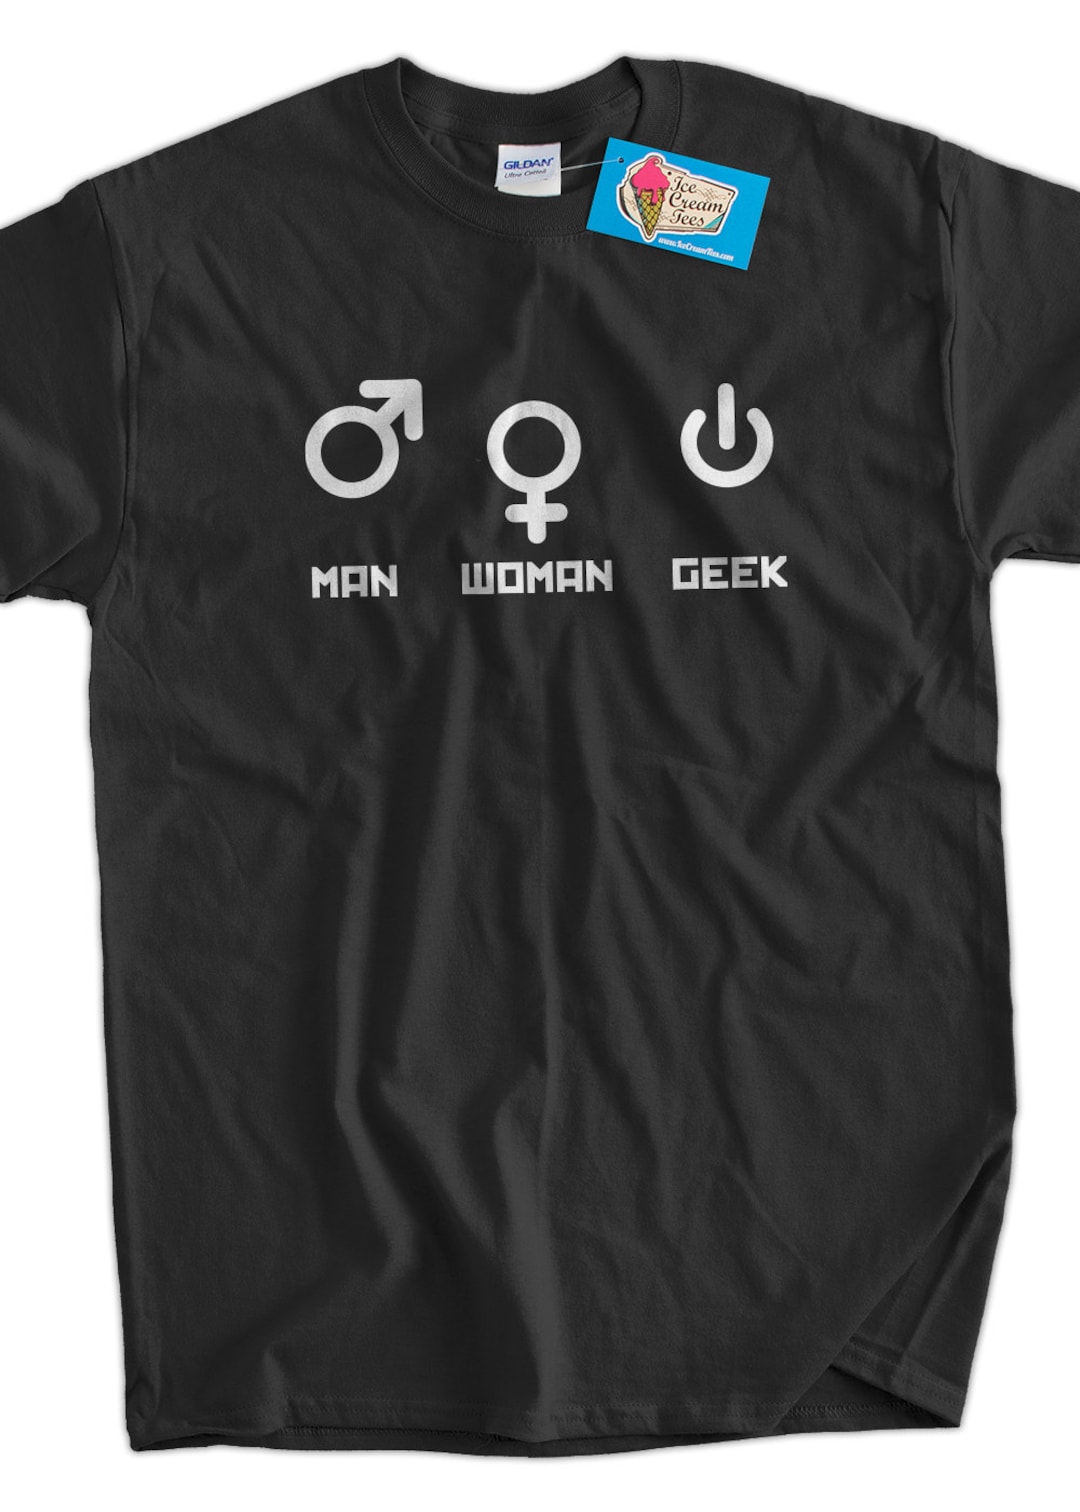 CSS Ninja Computer Tech Coder Geek Funny Ringer T Shirt Tee Shirts Men  Women